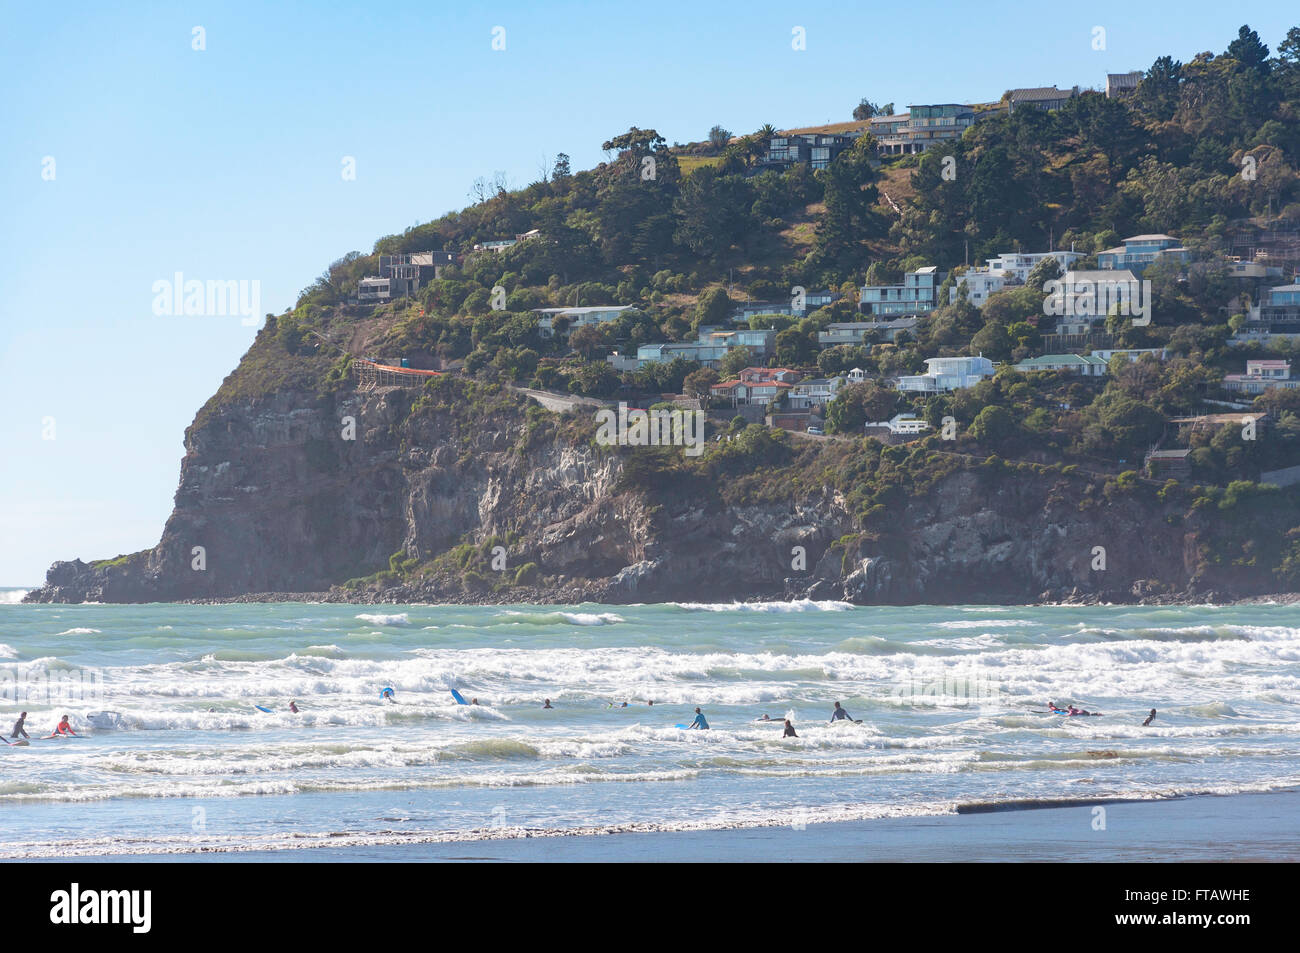 Les surfeurs à Scarborough Beach, Sumner, Christchurch, Canterbury, île du Sud, Nouvelle-Zélande Banque D'Images